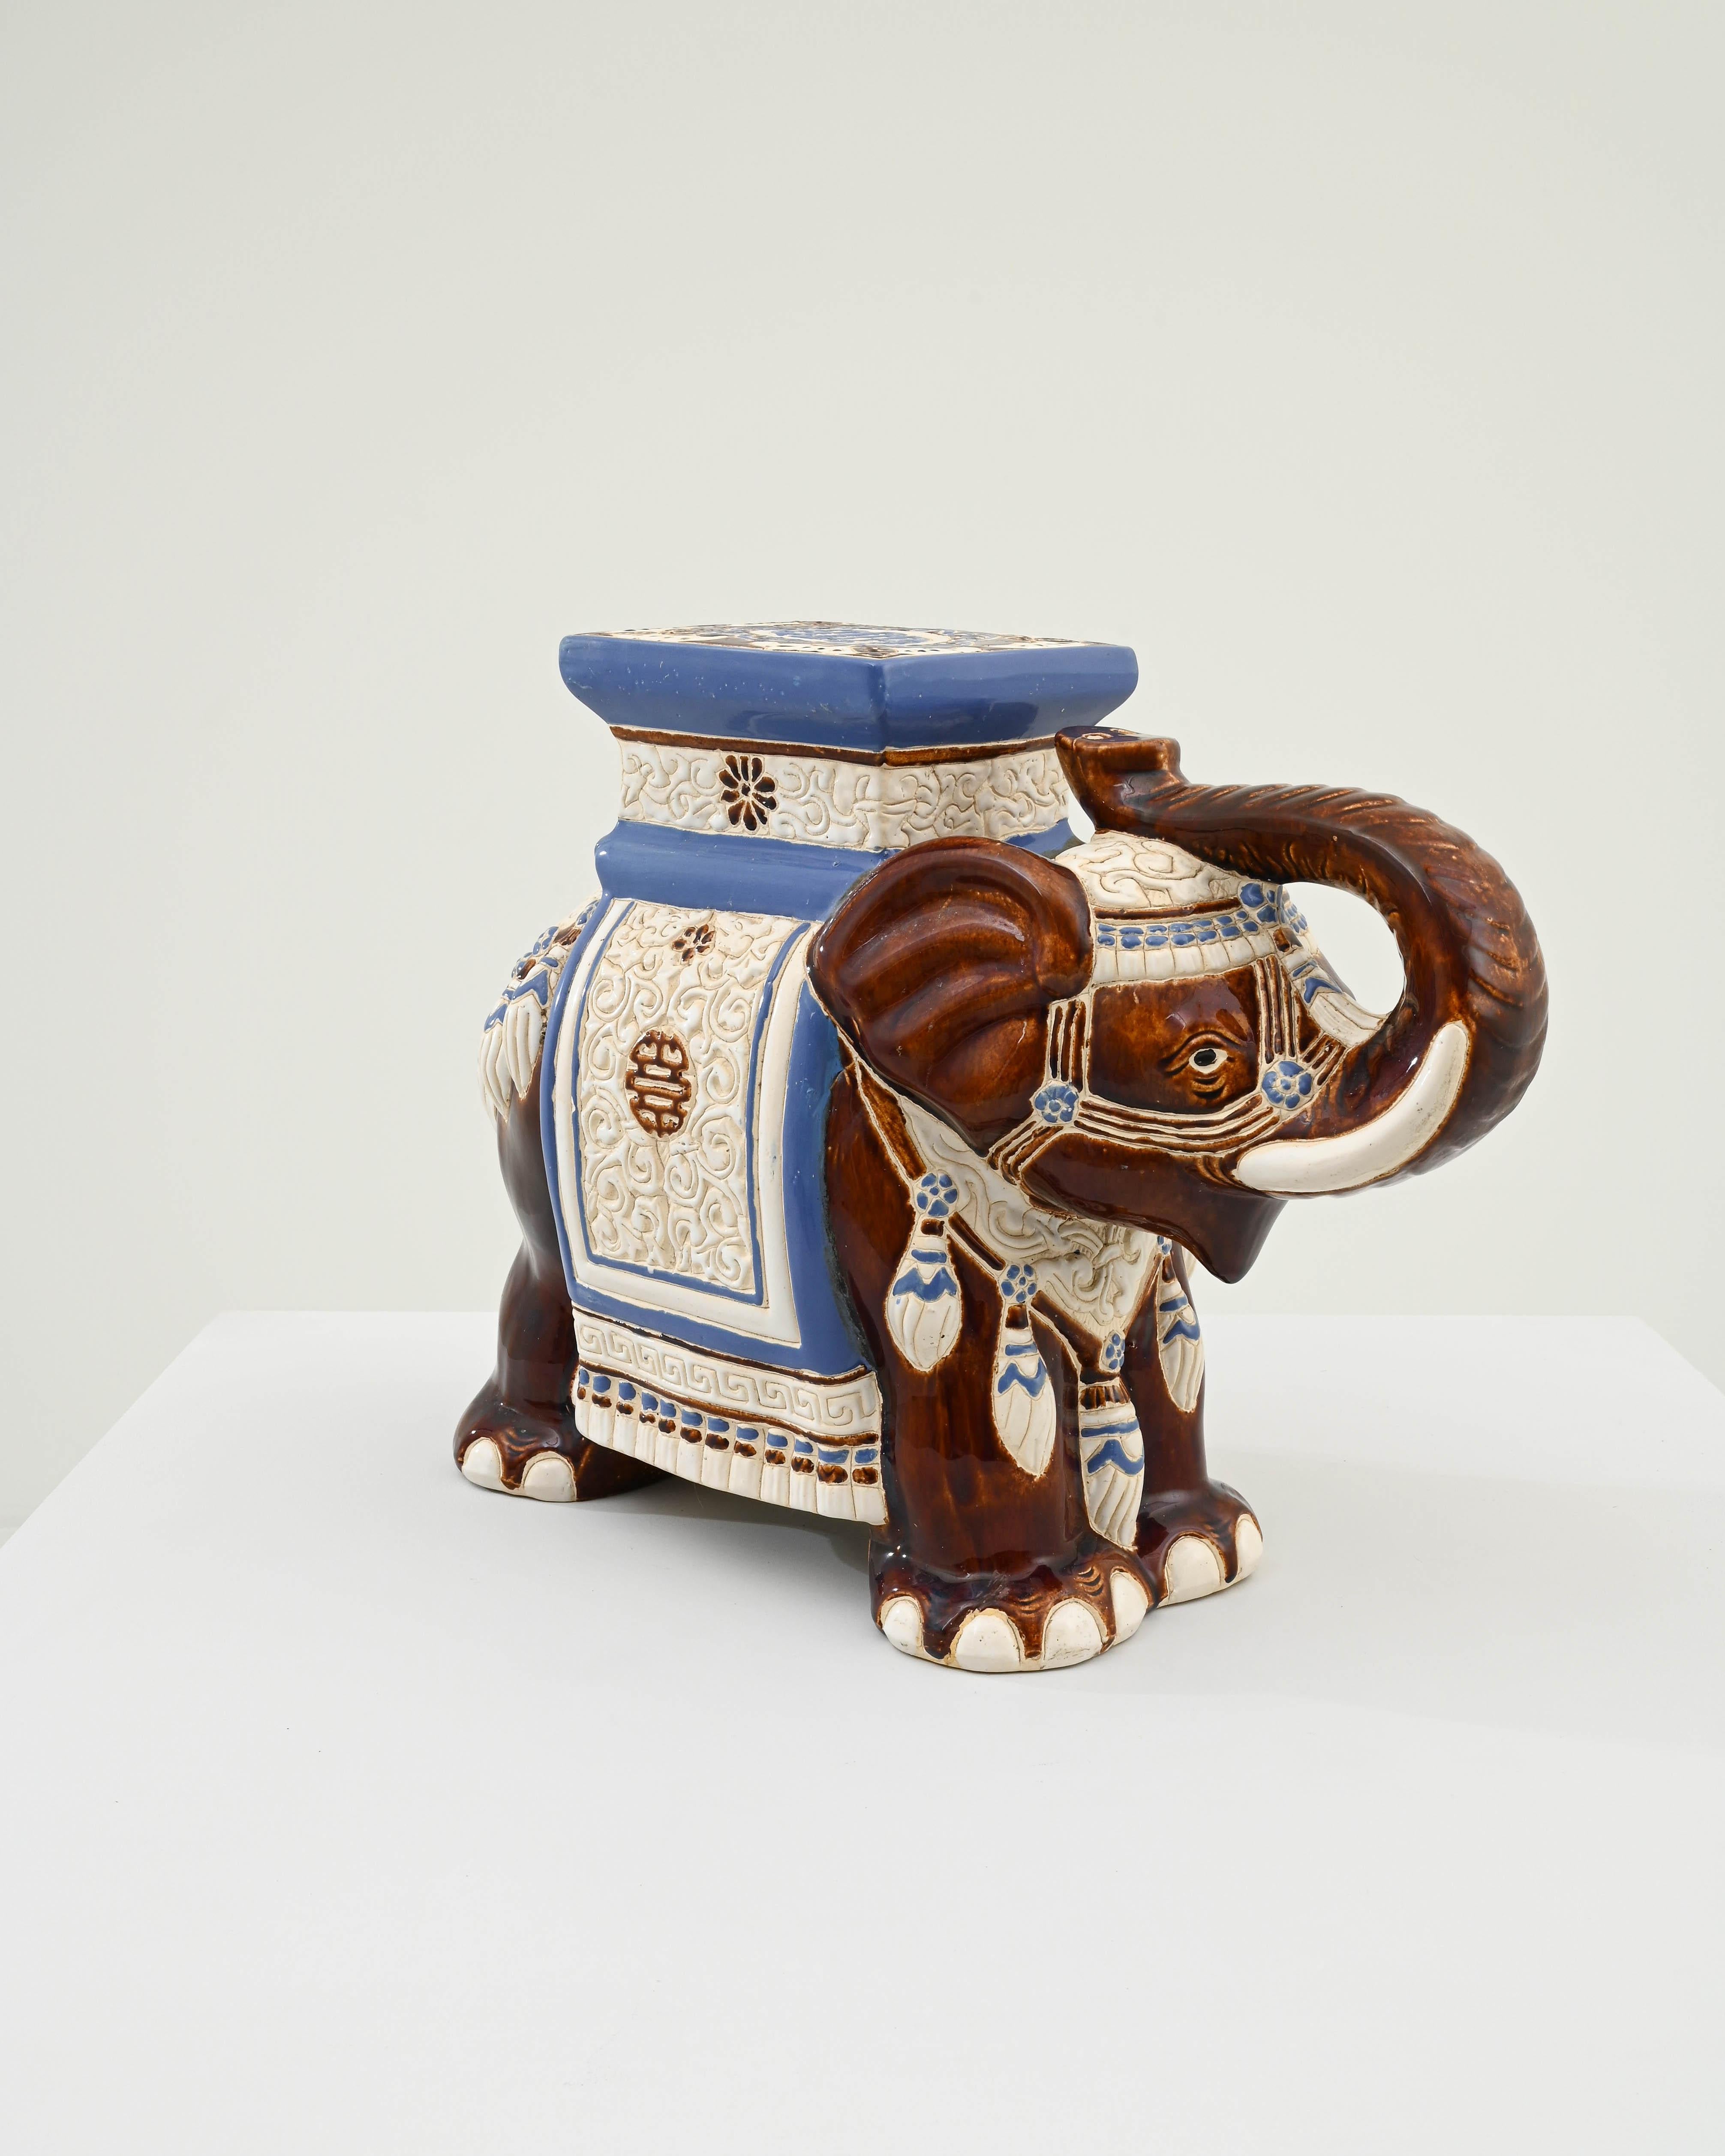 Décoration en céramique des années 1960 en France en forme d'éléphant. Un siège de selle et une couverture sont émaillés de bleu pâle et de blanc, la peau de l'éléphant est peinte d'une riche couleur terre d'ombre brûlée et bordée des lignes du